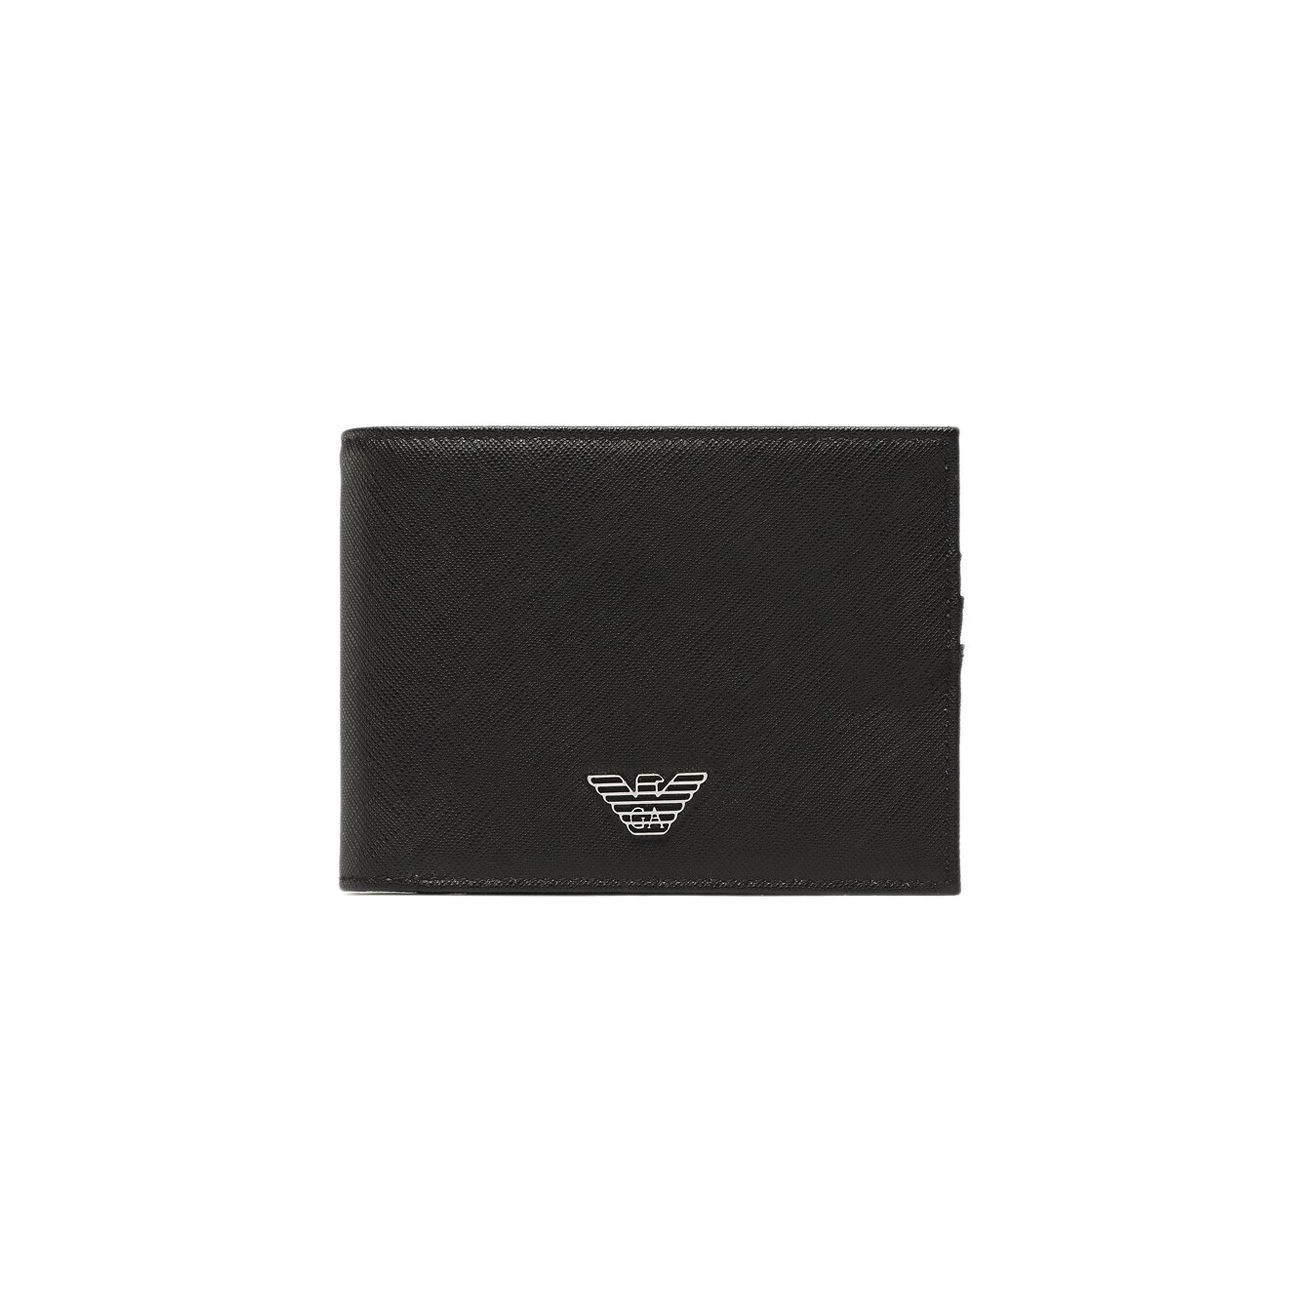 EA7 Emporio Armani Leather compact wallet